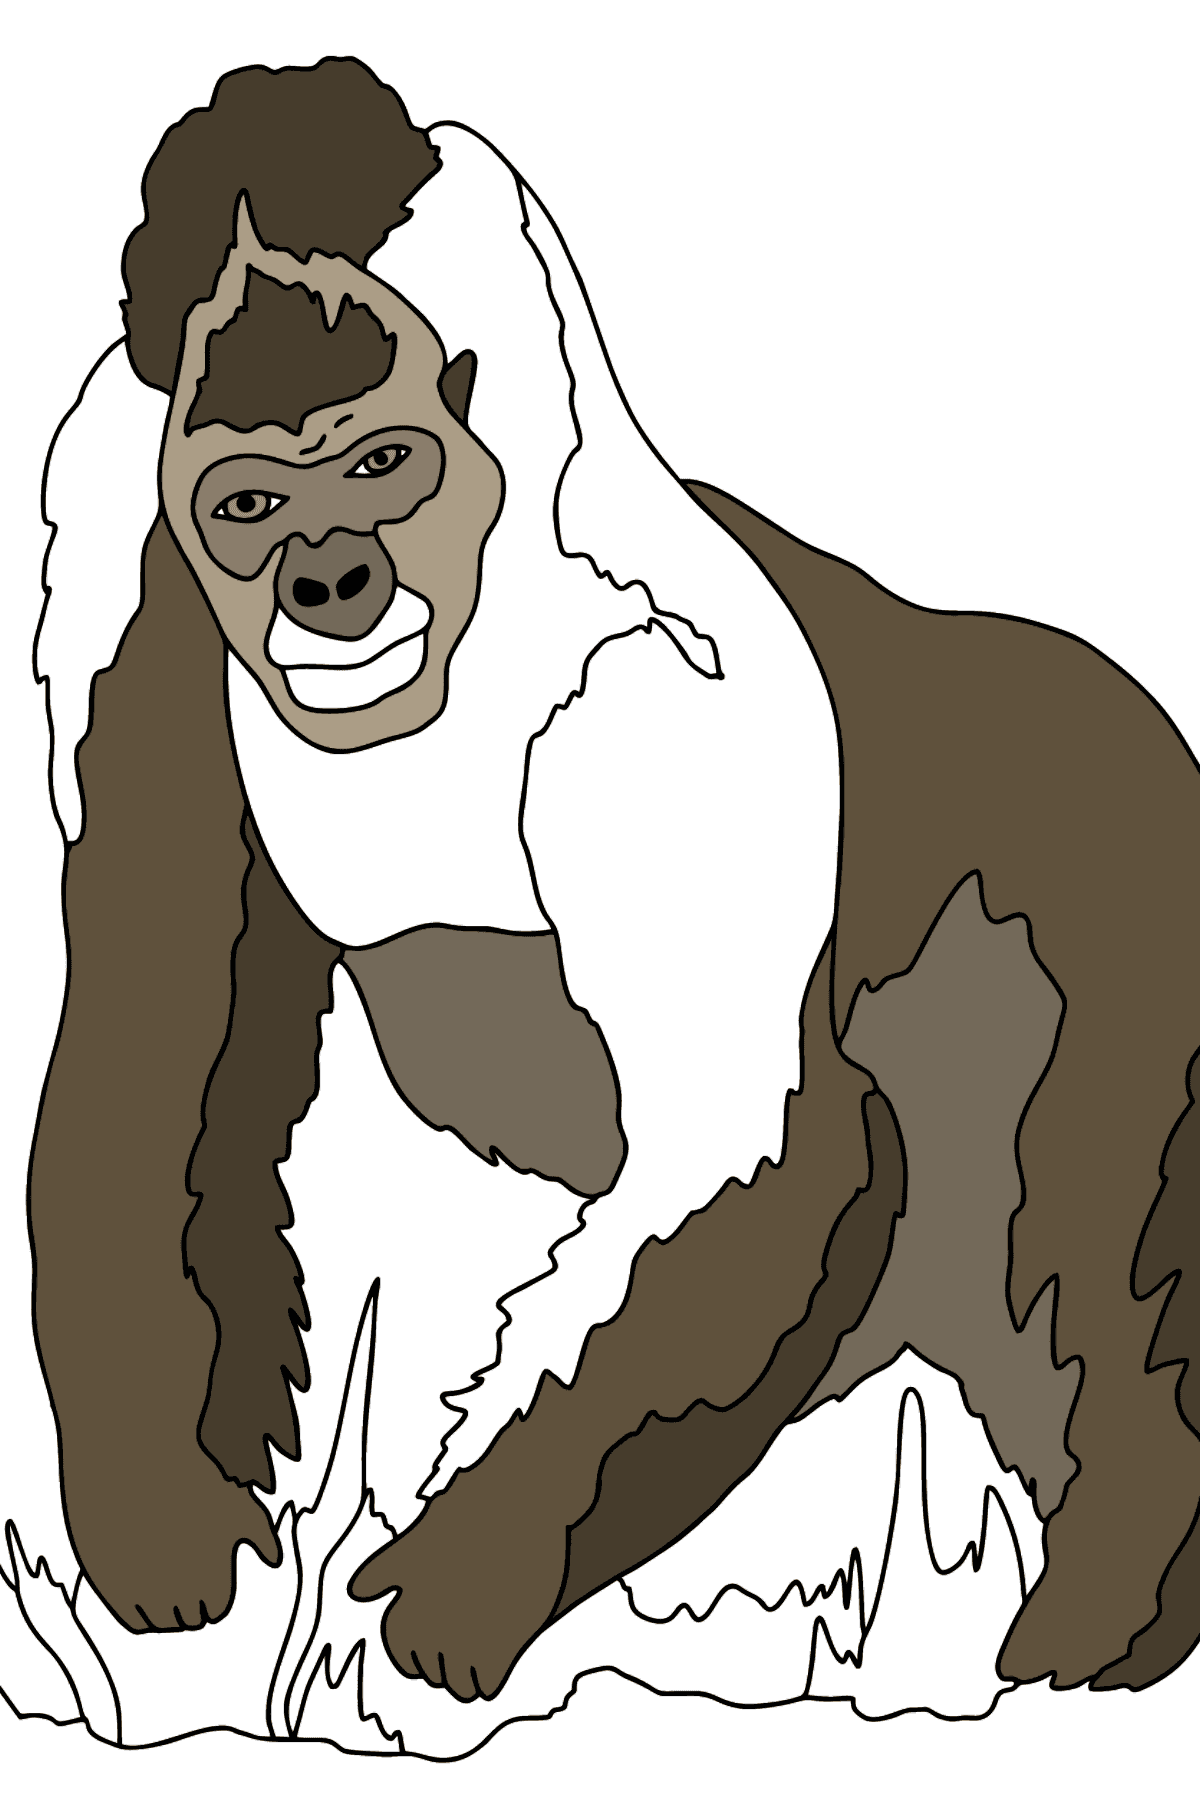 Ausmalbild - Ein behaarter Gorilla - Malvorlagen für Kinder